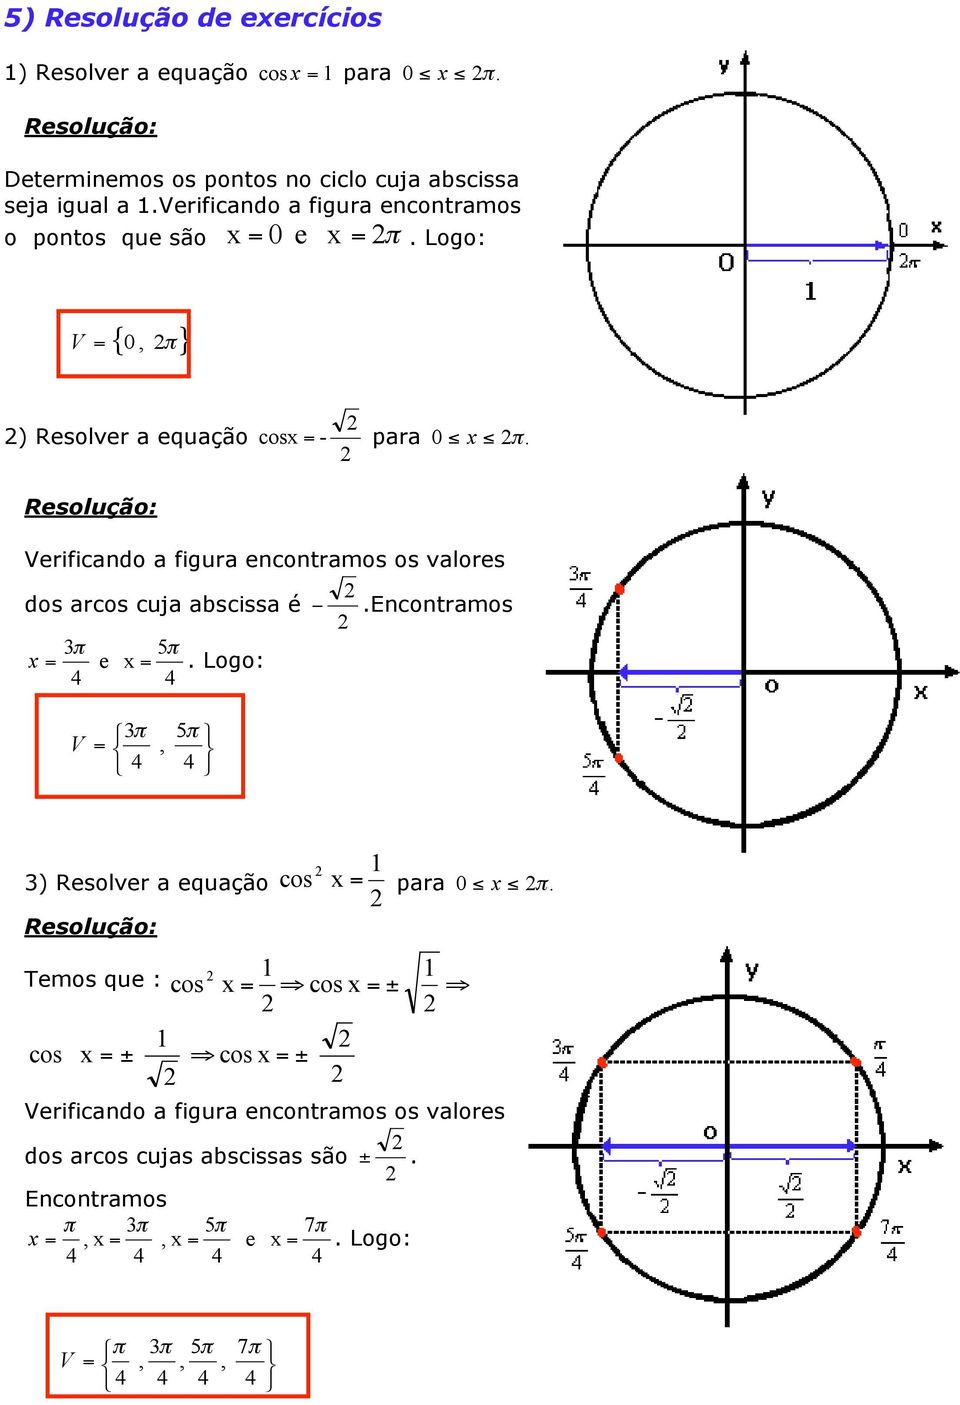 cuja abscissa é - Encontramos 5 x = e x = Logo: 4 4 Ï = Ì 5, Ó 4 4 ) Resolver a equação Temos que : cos x = cos x = ± fi cos x = ± cos x = ara 0 x fi